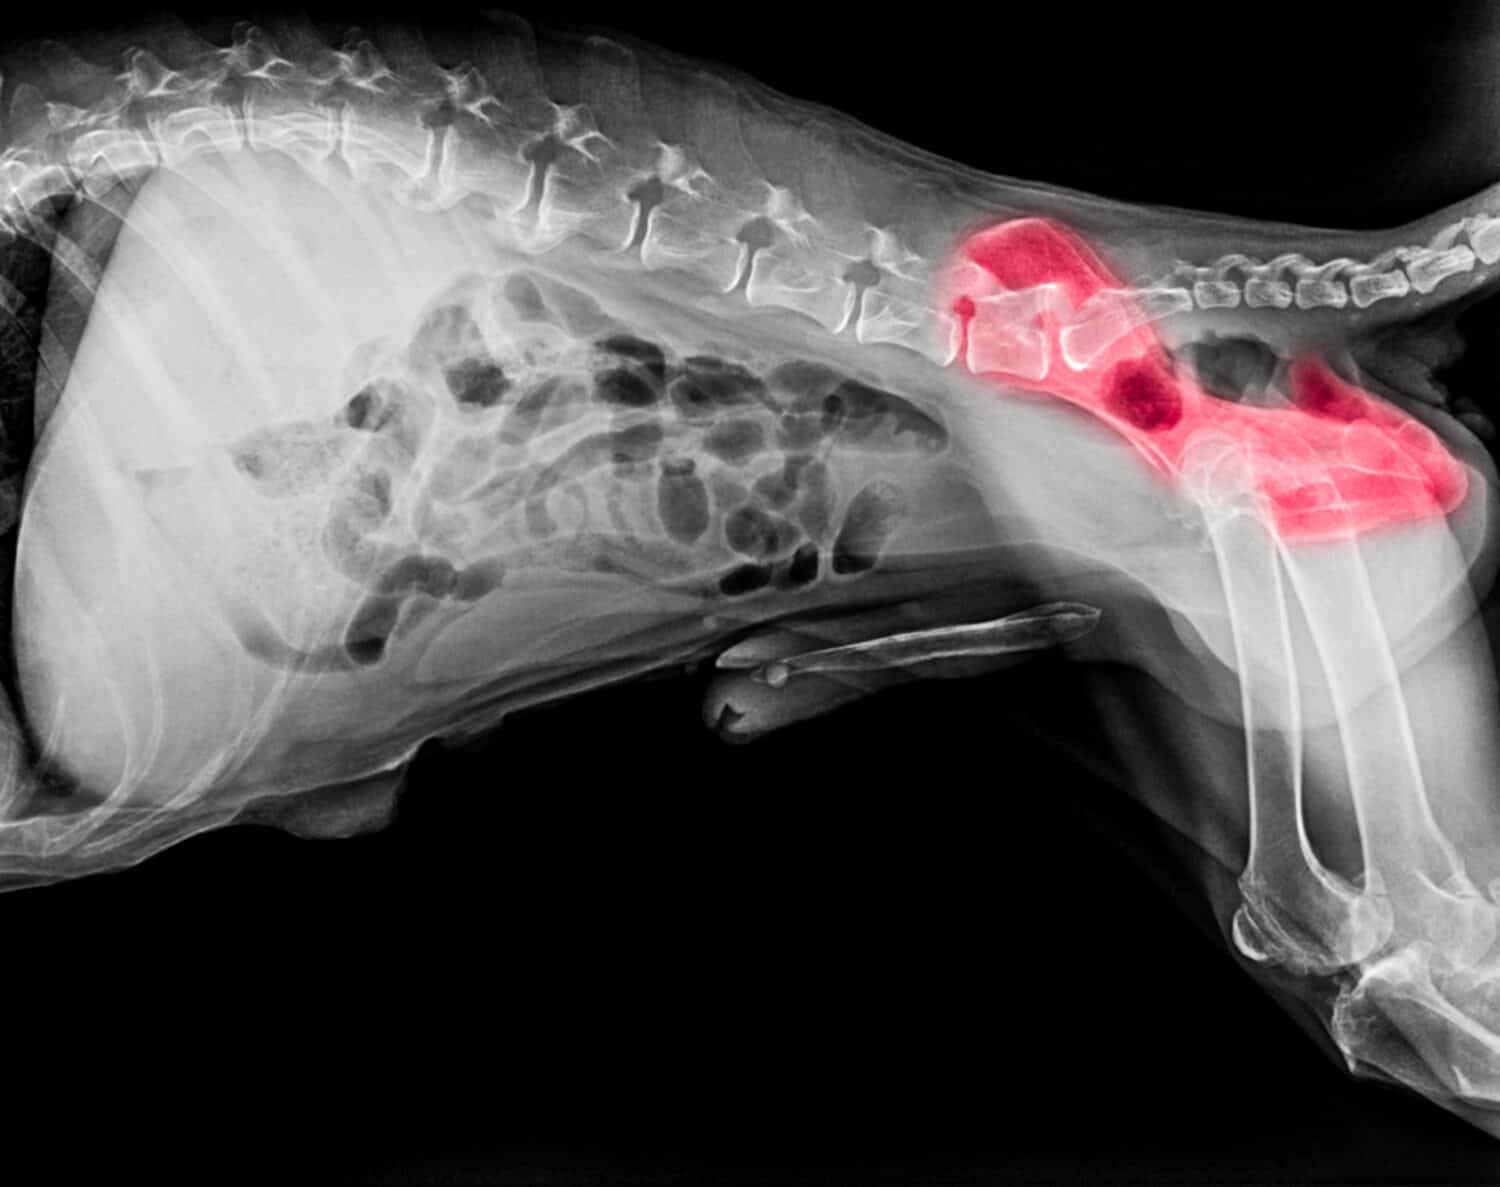 Pellicola a raggi X della vista laterale del cane con evidenziazione rossa nell'area del dolore osseo dell'anca o displasia dell'anca cane- Medicina veterinaria- Concetto di anatomia veterinaria